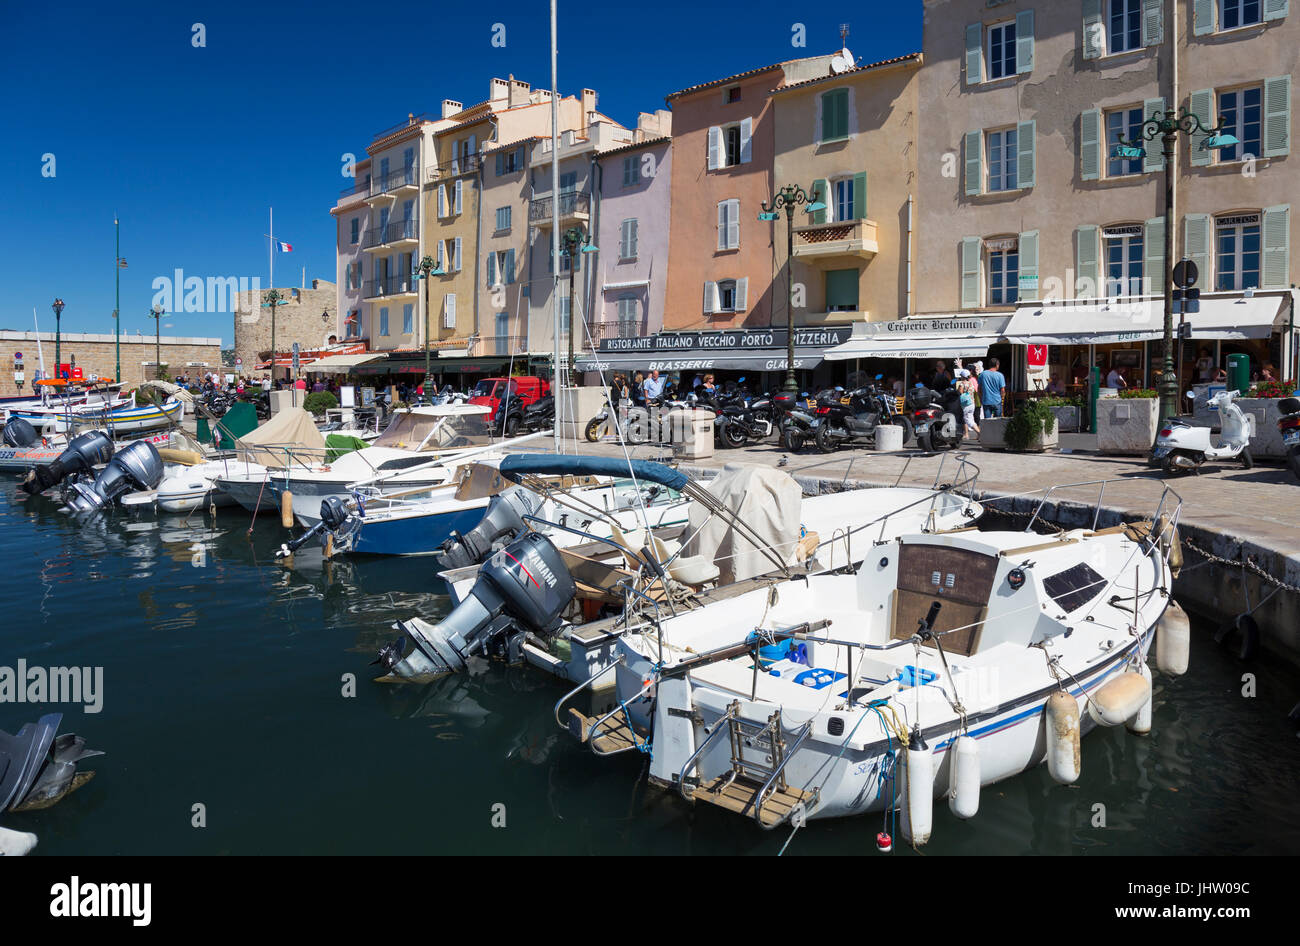 Hafen von Saint-Tropez (Le Vieux port de Saint Tropez), Frankreich Stockfoto